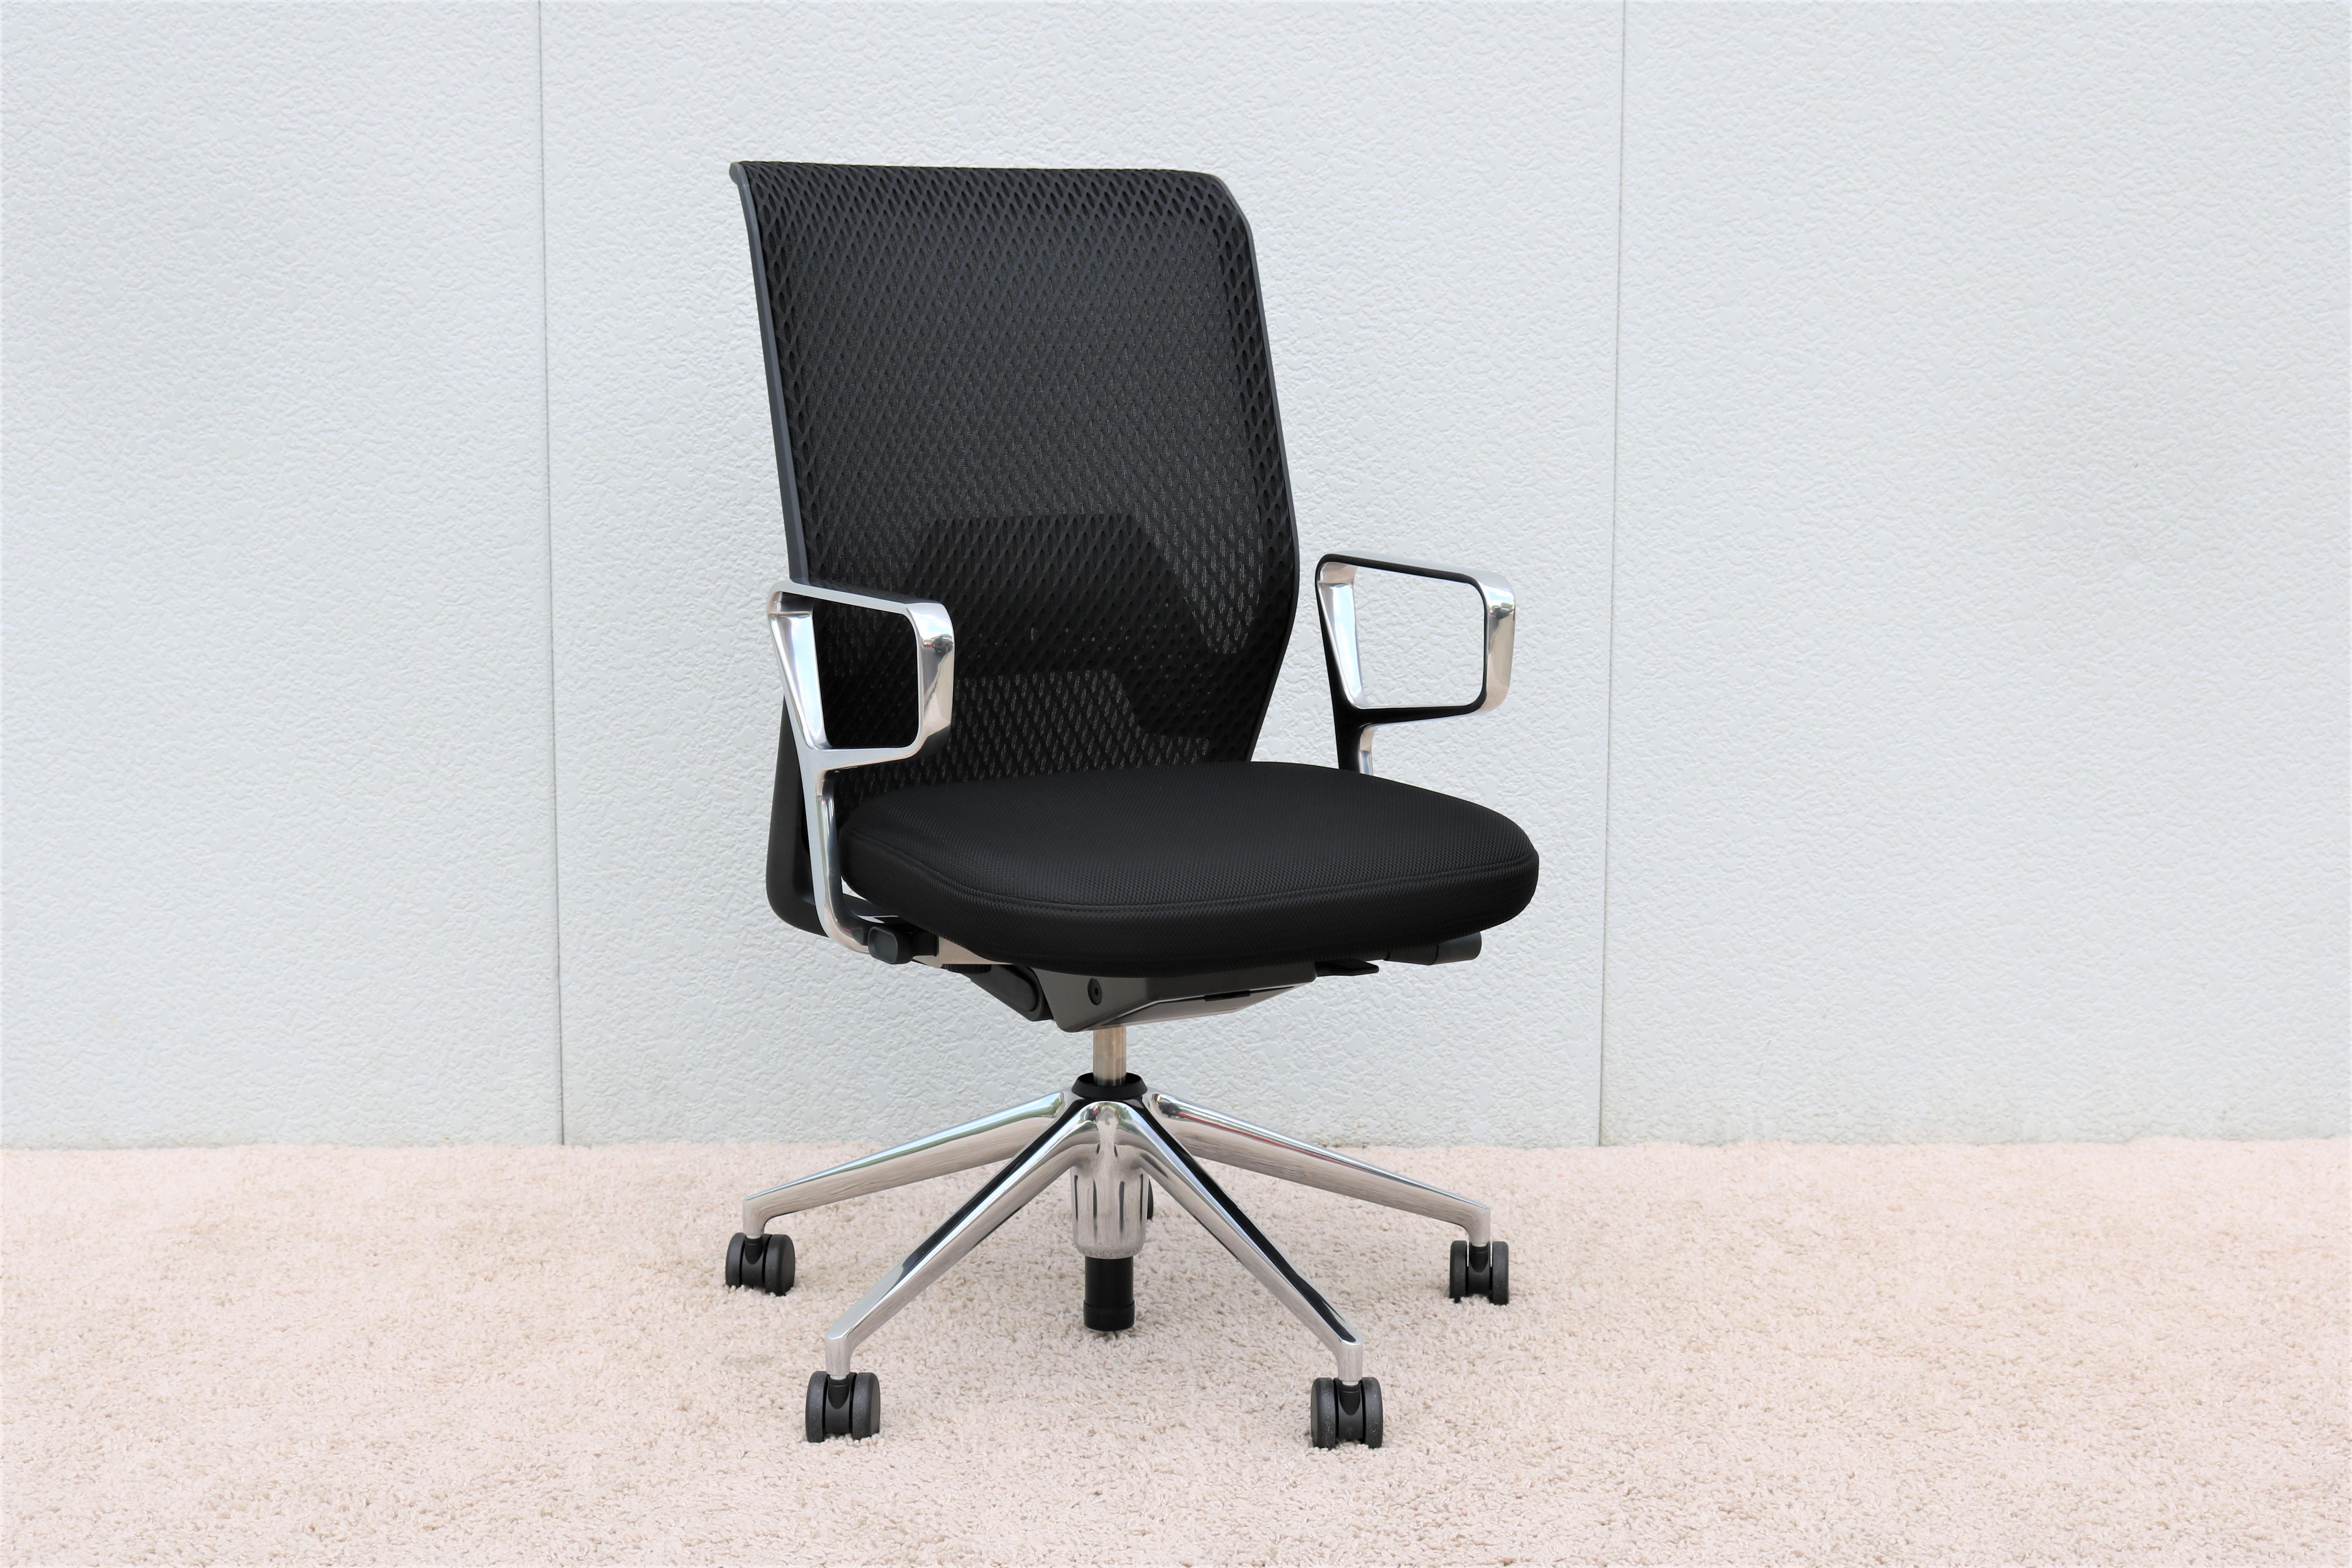 Der von Antonio Citterio für Vitra entworfene ergonomische Bürostuhl ID mesh vereint Komfort, Technologie und Eleganz. 
Der weiche Sitz und das stützende Netzgewebe der Rückenlehne lassen die Luft zirkulieren und sorgen für anhaltenden Komfort.